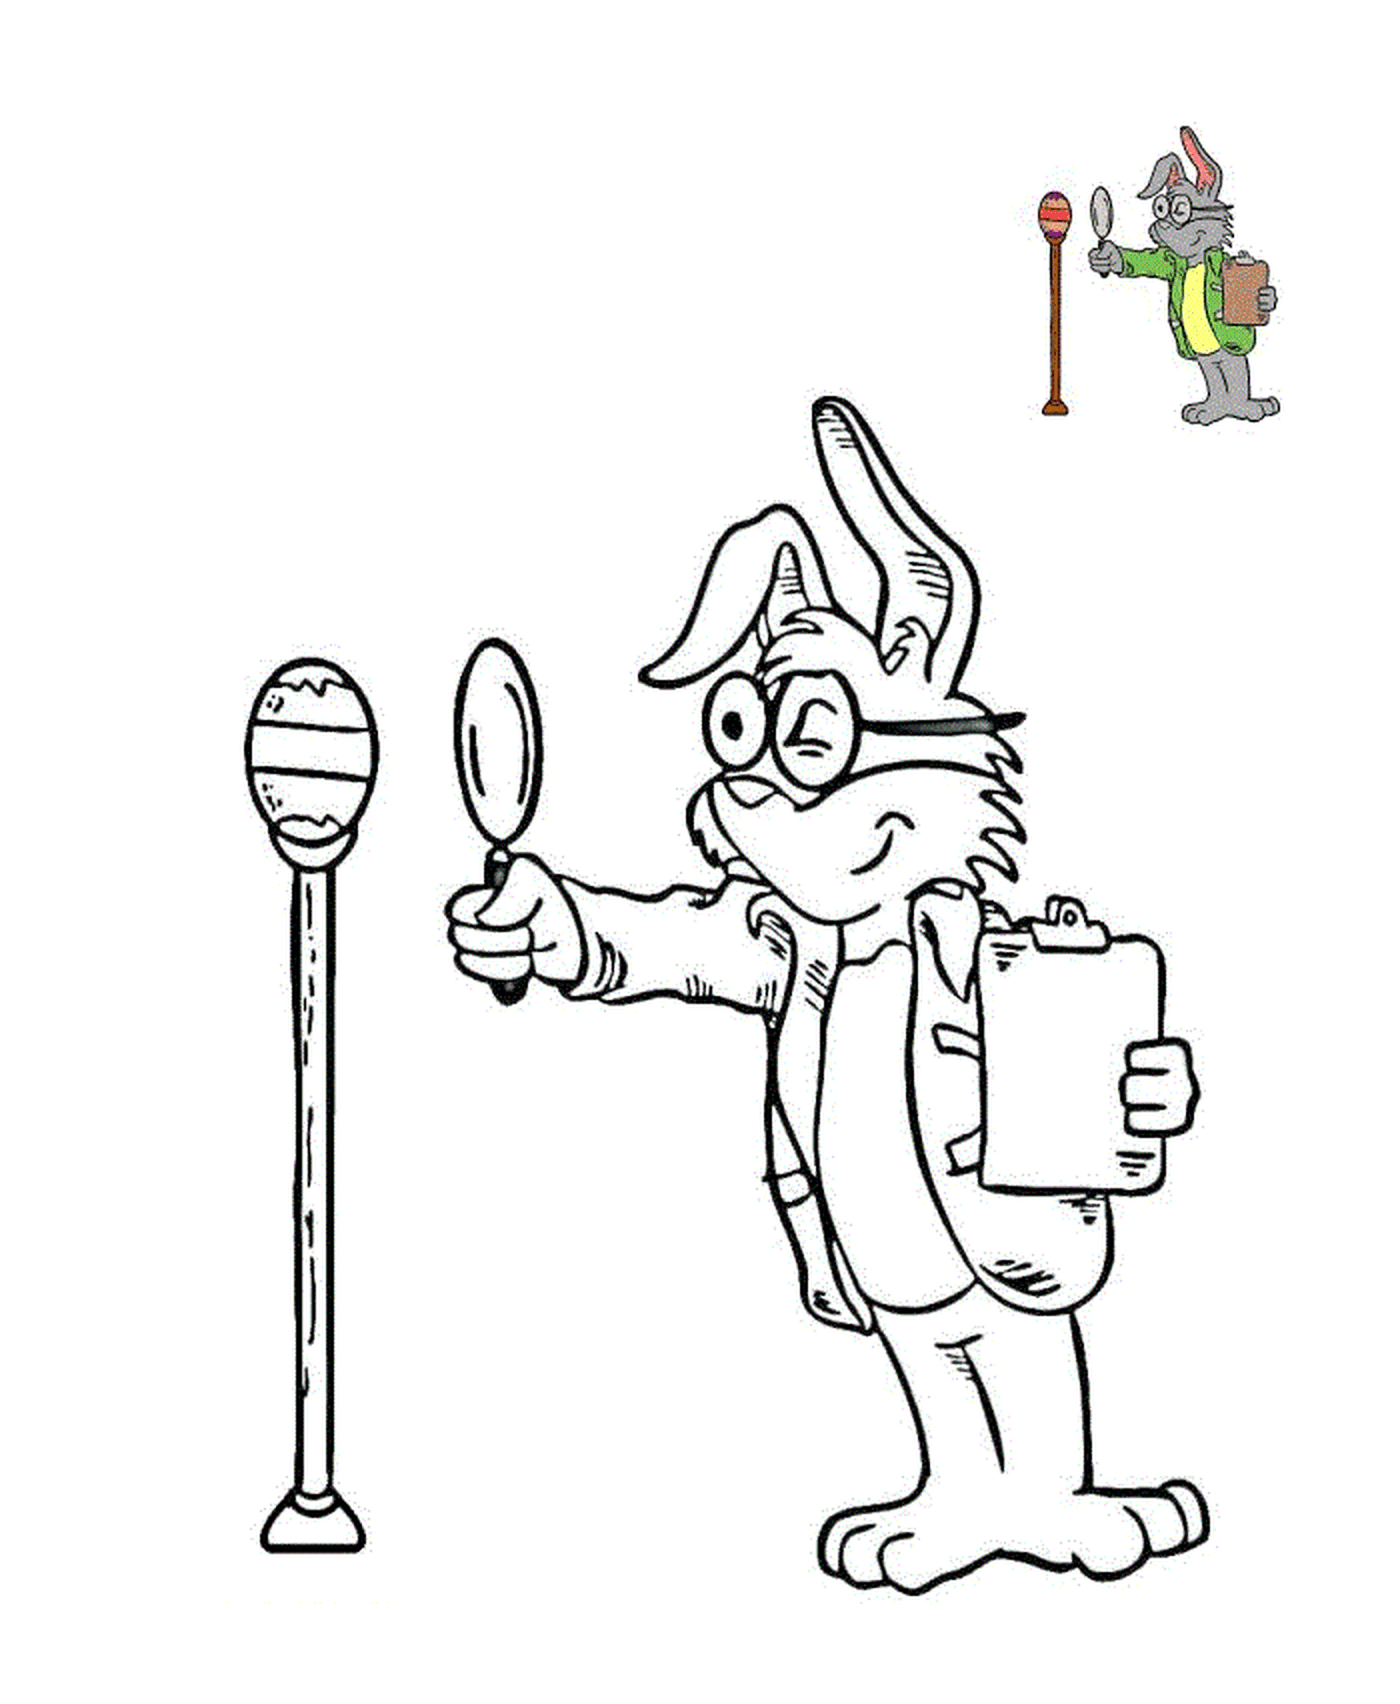  Ispettore coniglio ispeziona l'uovo di Pasqua 